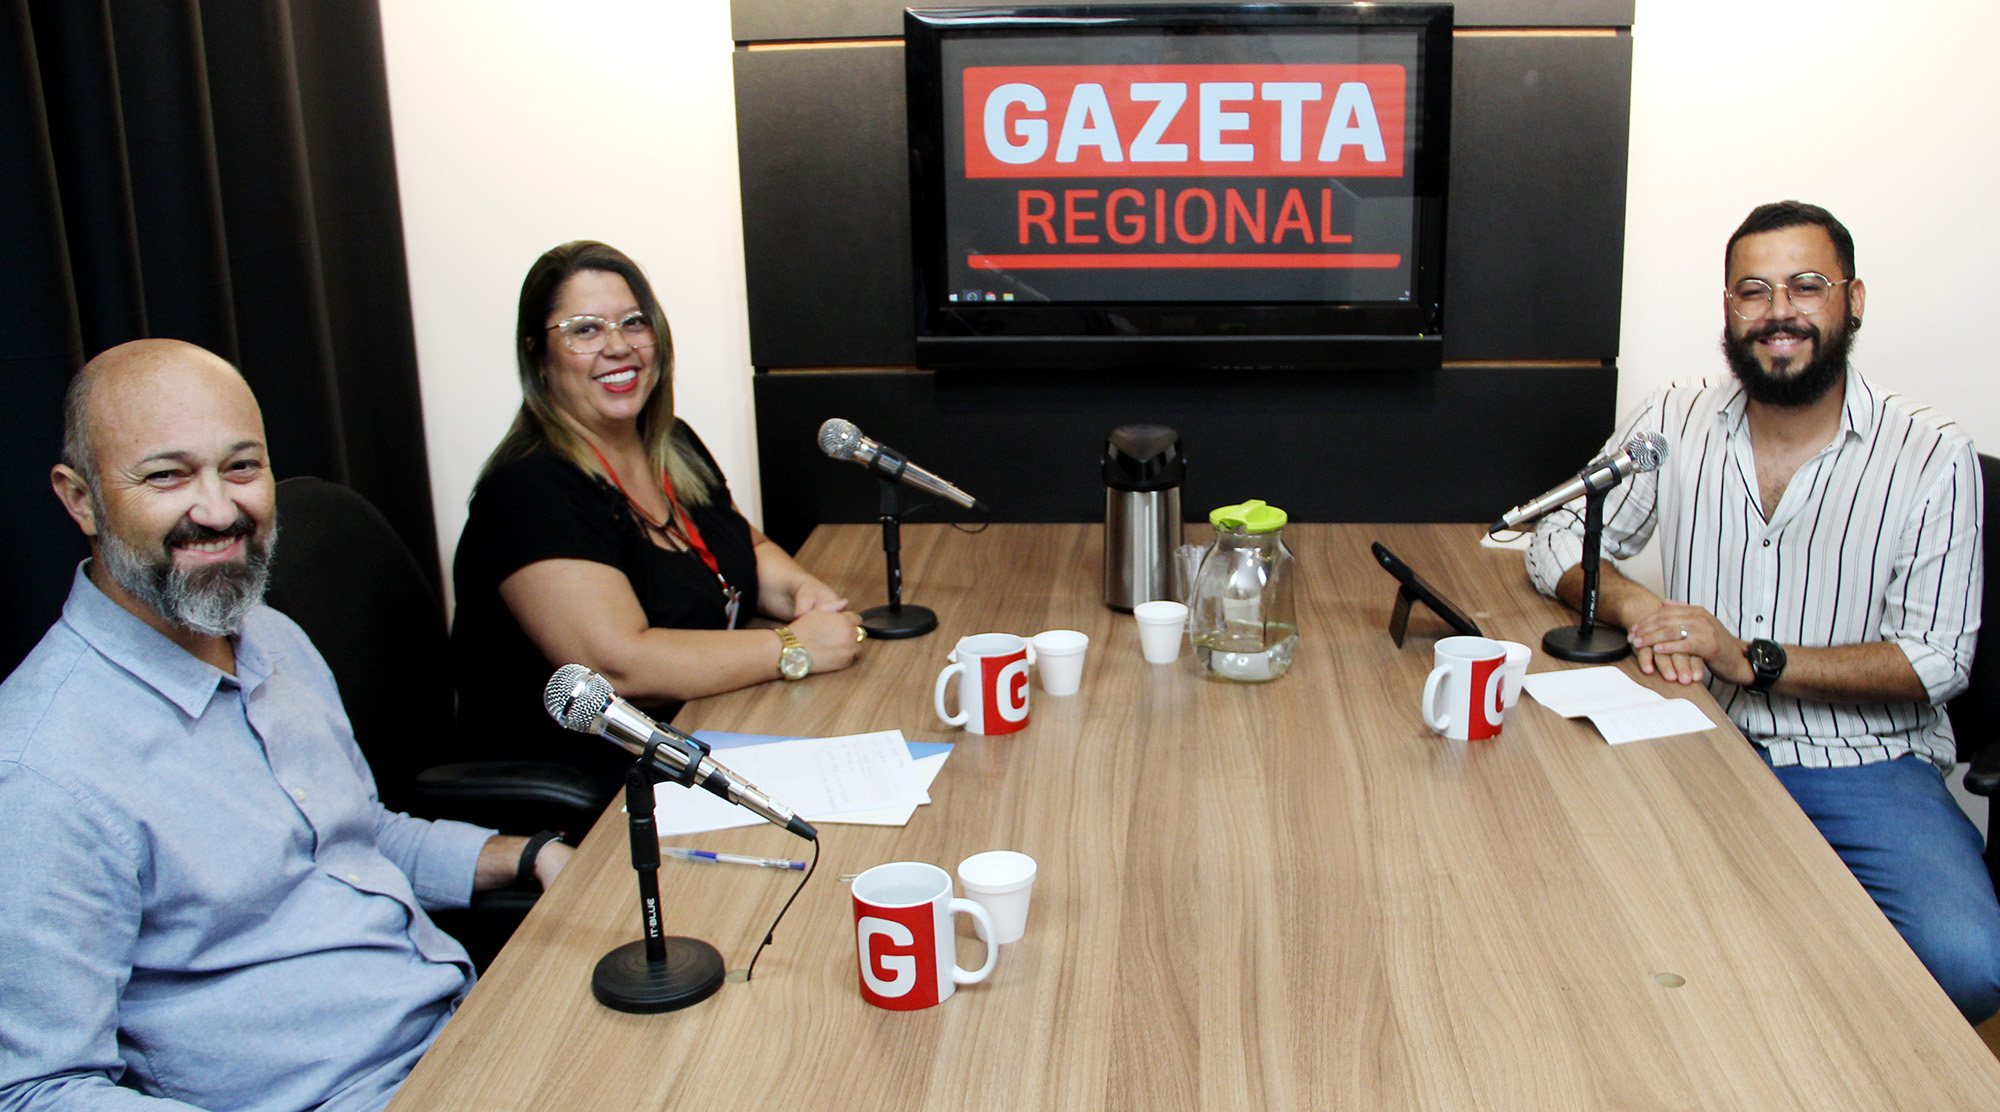 Presidente Clícia e Dr. Rafael compartilham as conquistas do Sinseri no podcast da Gazeta